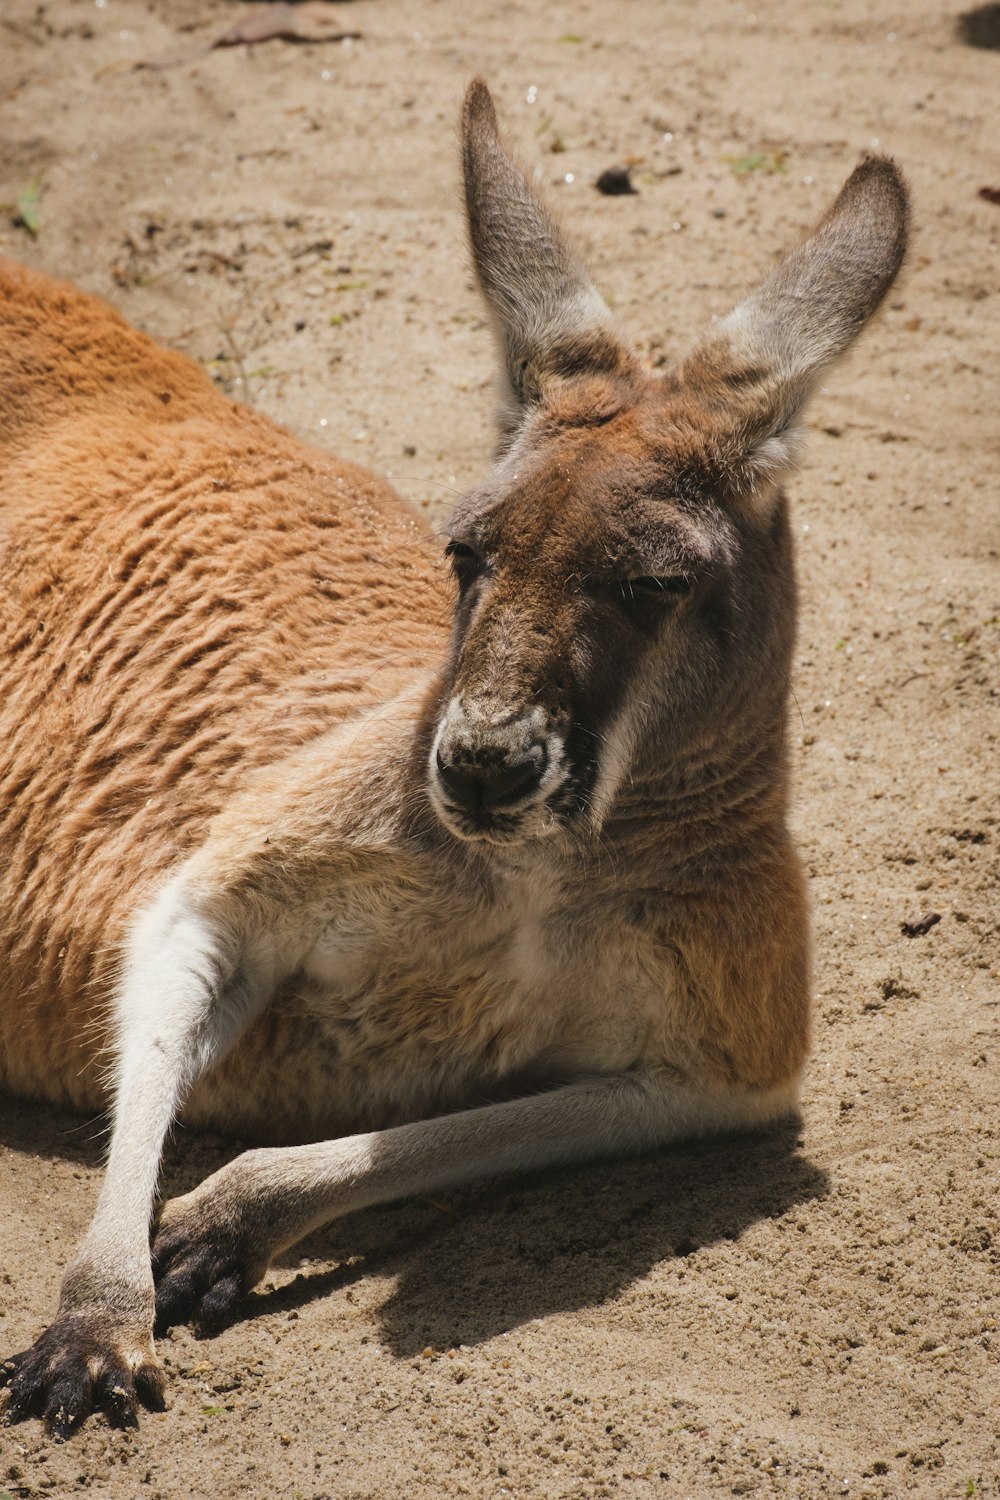 a kangaroo lying on the ground